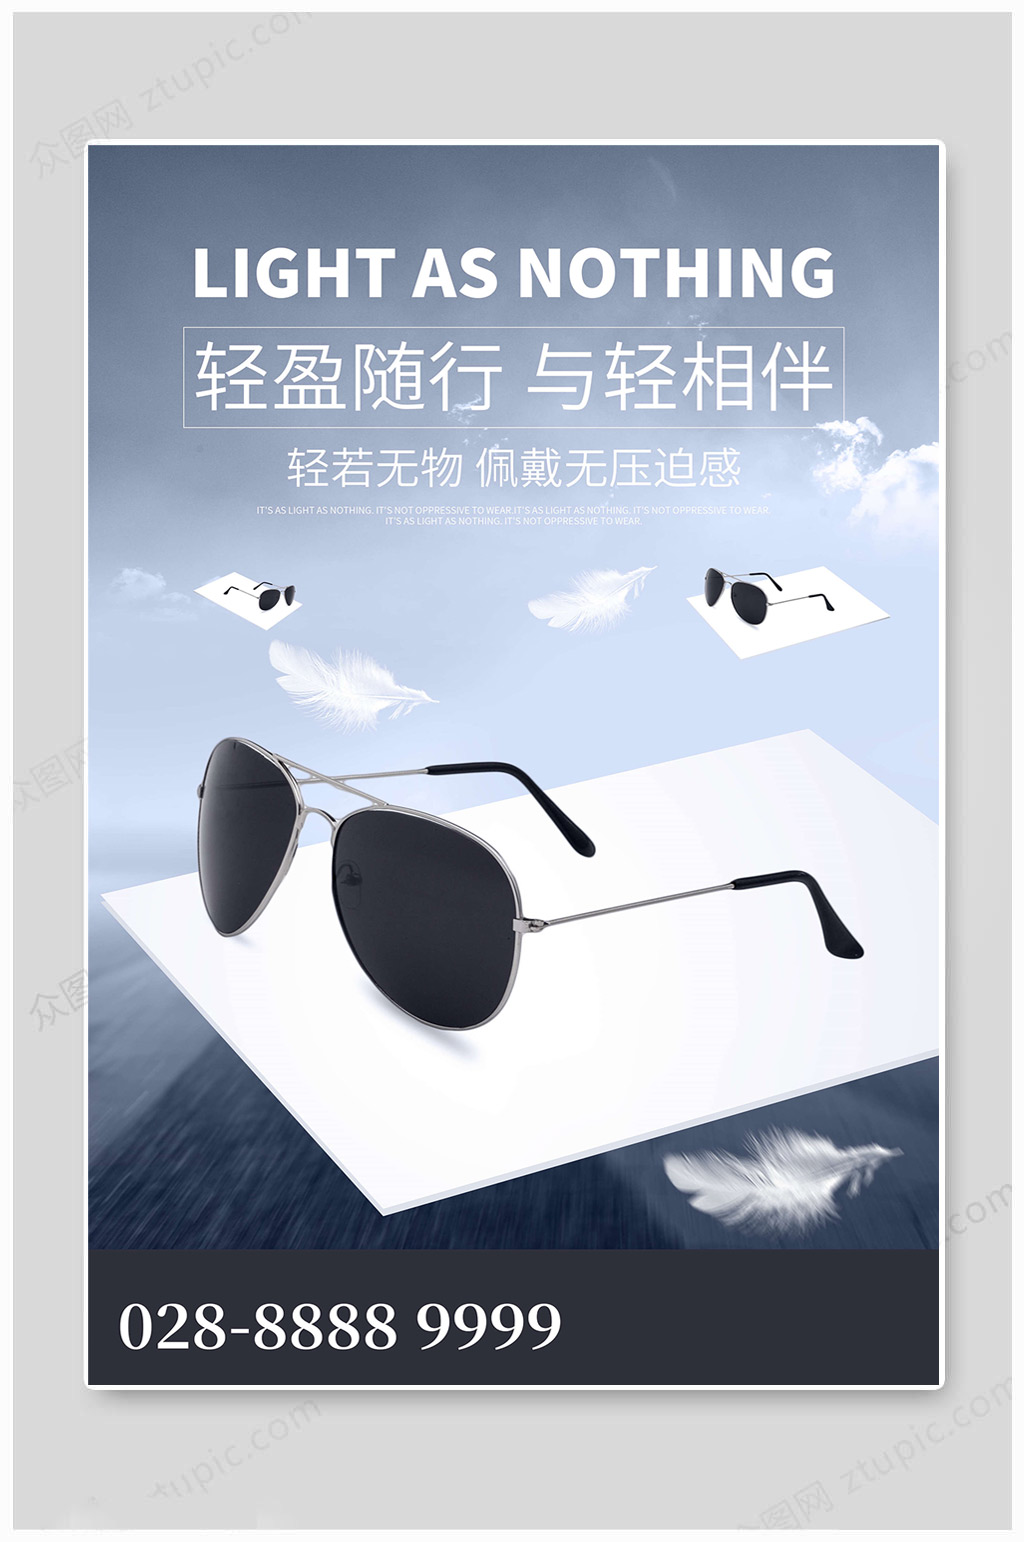 时尚大气眼镜海报素材免费下载,本作品是由凎上传的原创平面广告素材